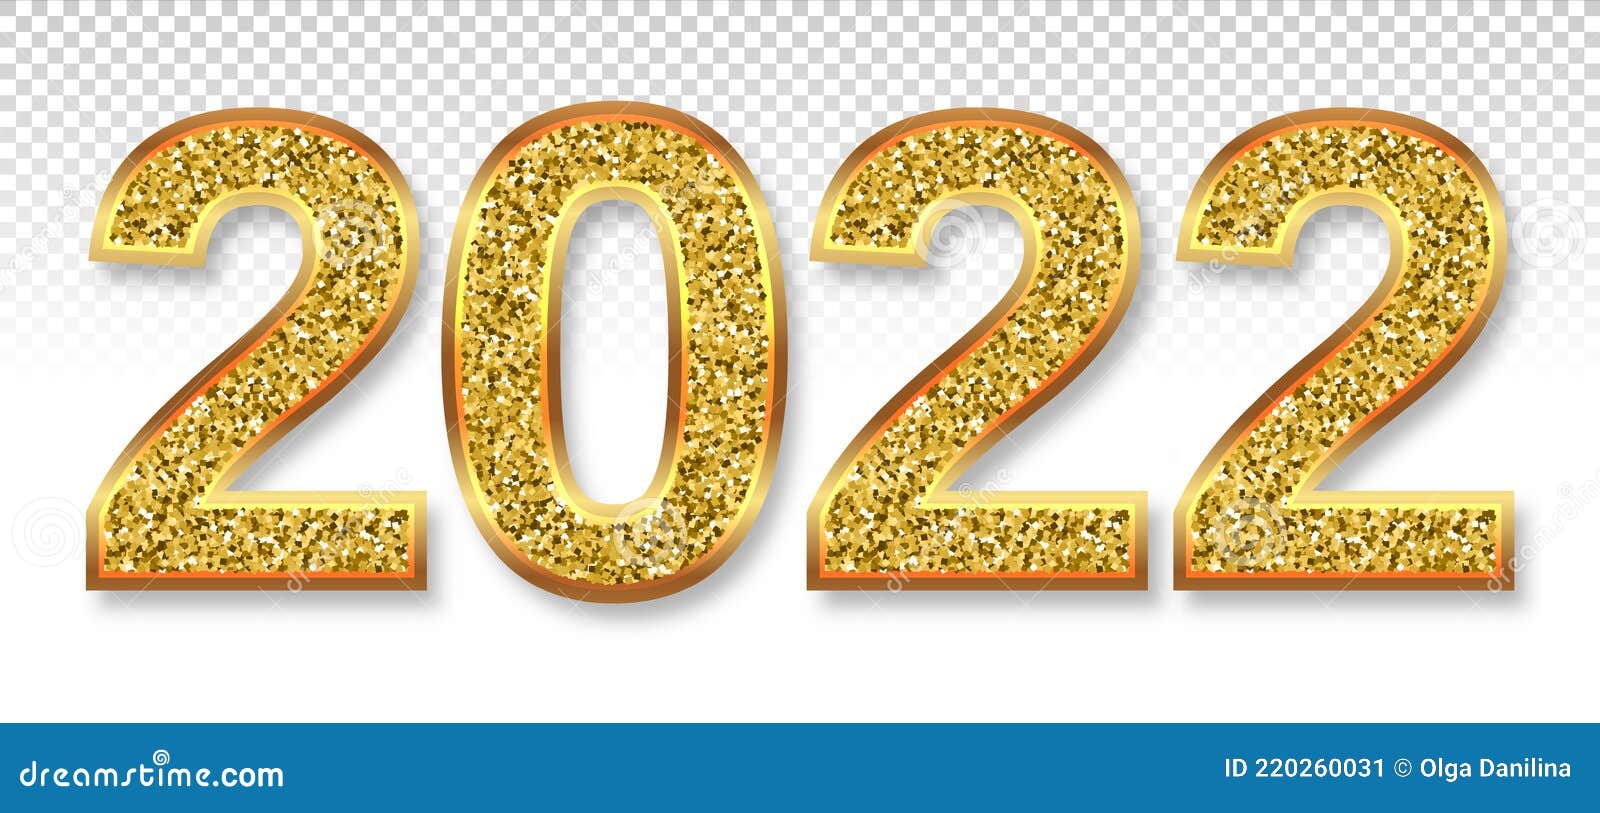 Số 2022 vàng rực rỡ với vector xoắn ốc Eps 10 sẽ đem lại cho bạn nét độc đáo và chuyên nghiệp. Hình ảnh số này phù hợp để dùng trong thiết kế và trang trí mọi sản phẩm. Với sự chọn lựa tinh tế này, bạn sẽ luôn nổi bật và thu hút ánh nhìn từ khách hàng.